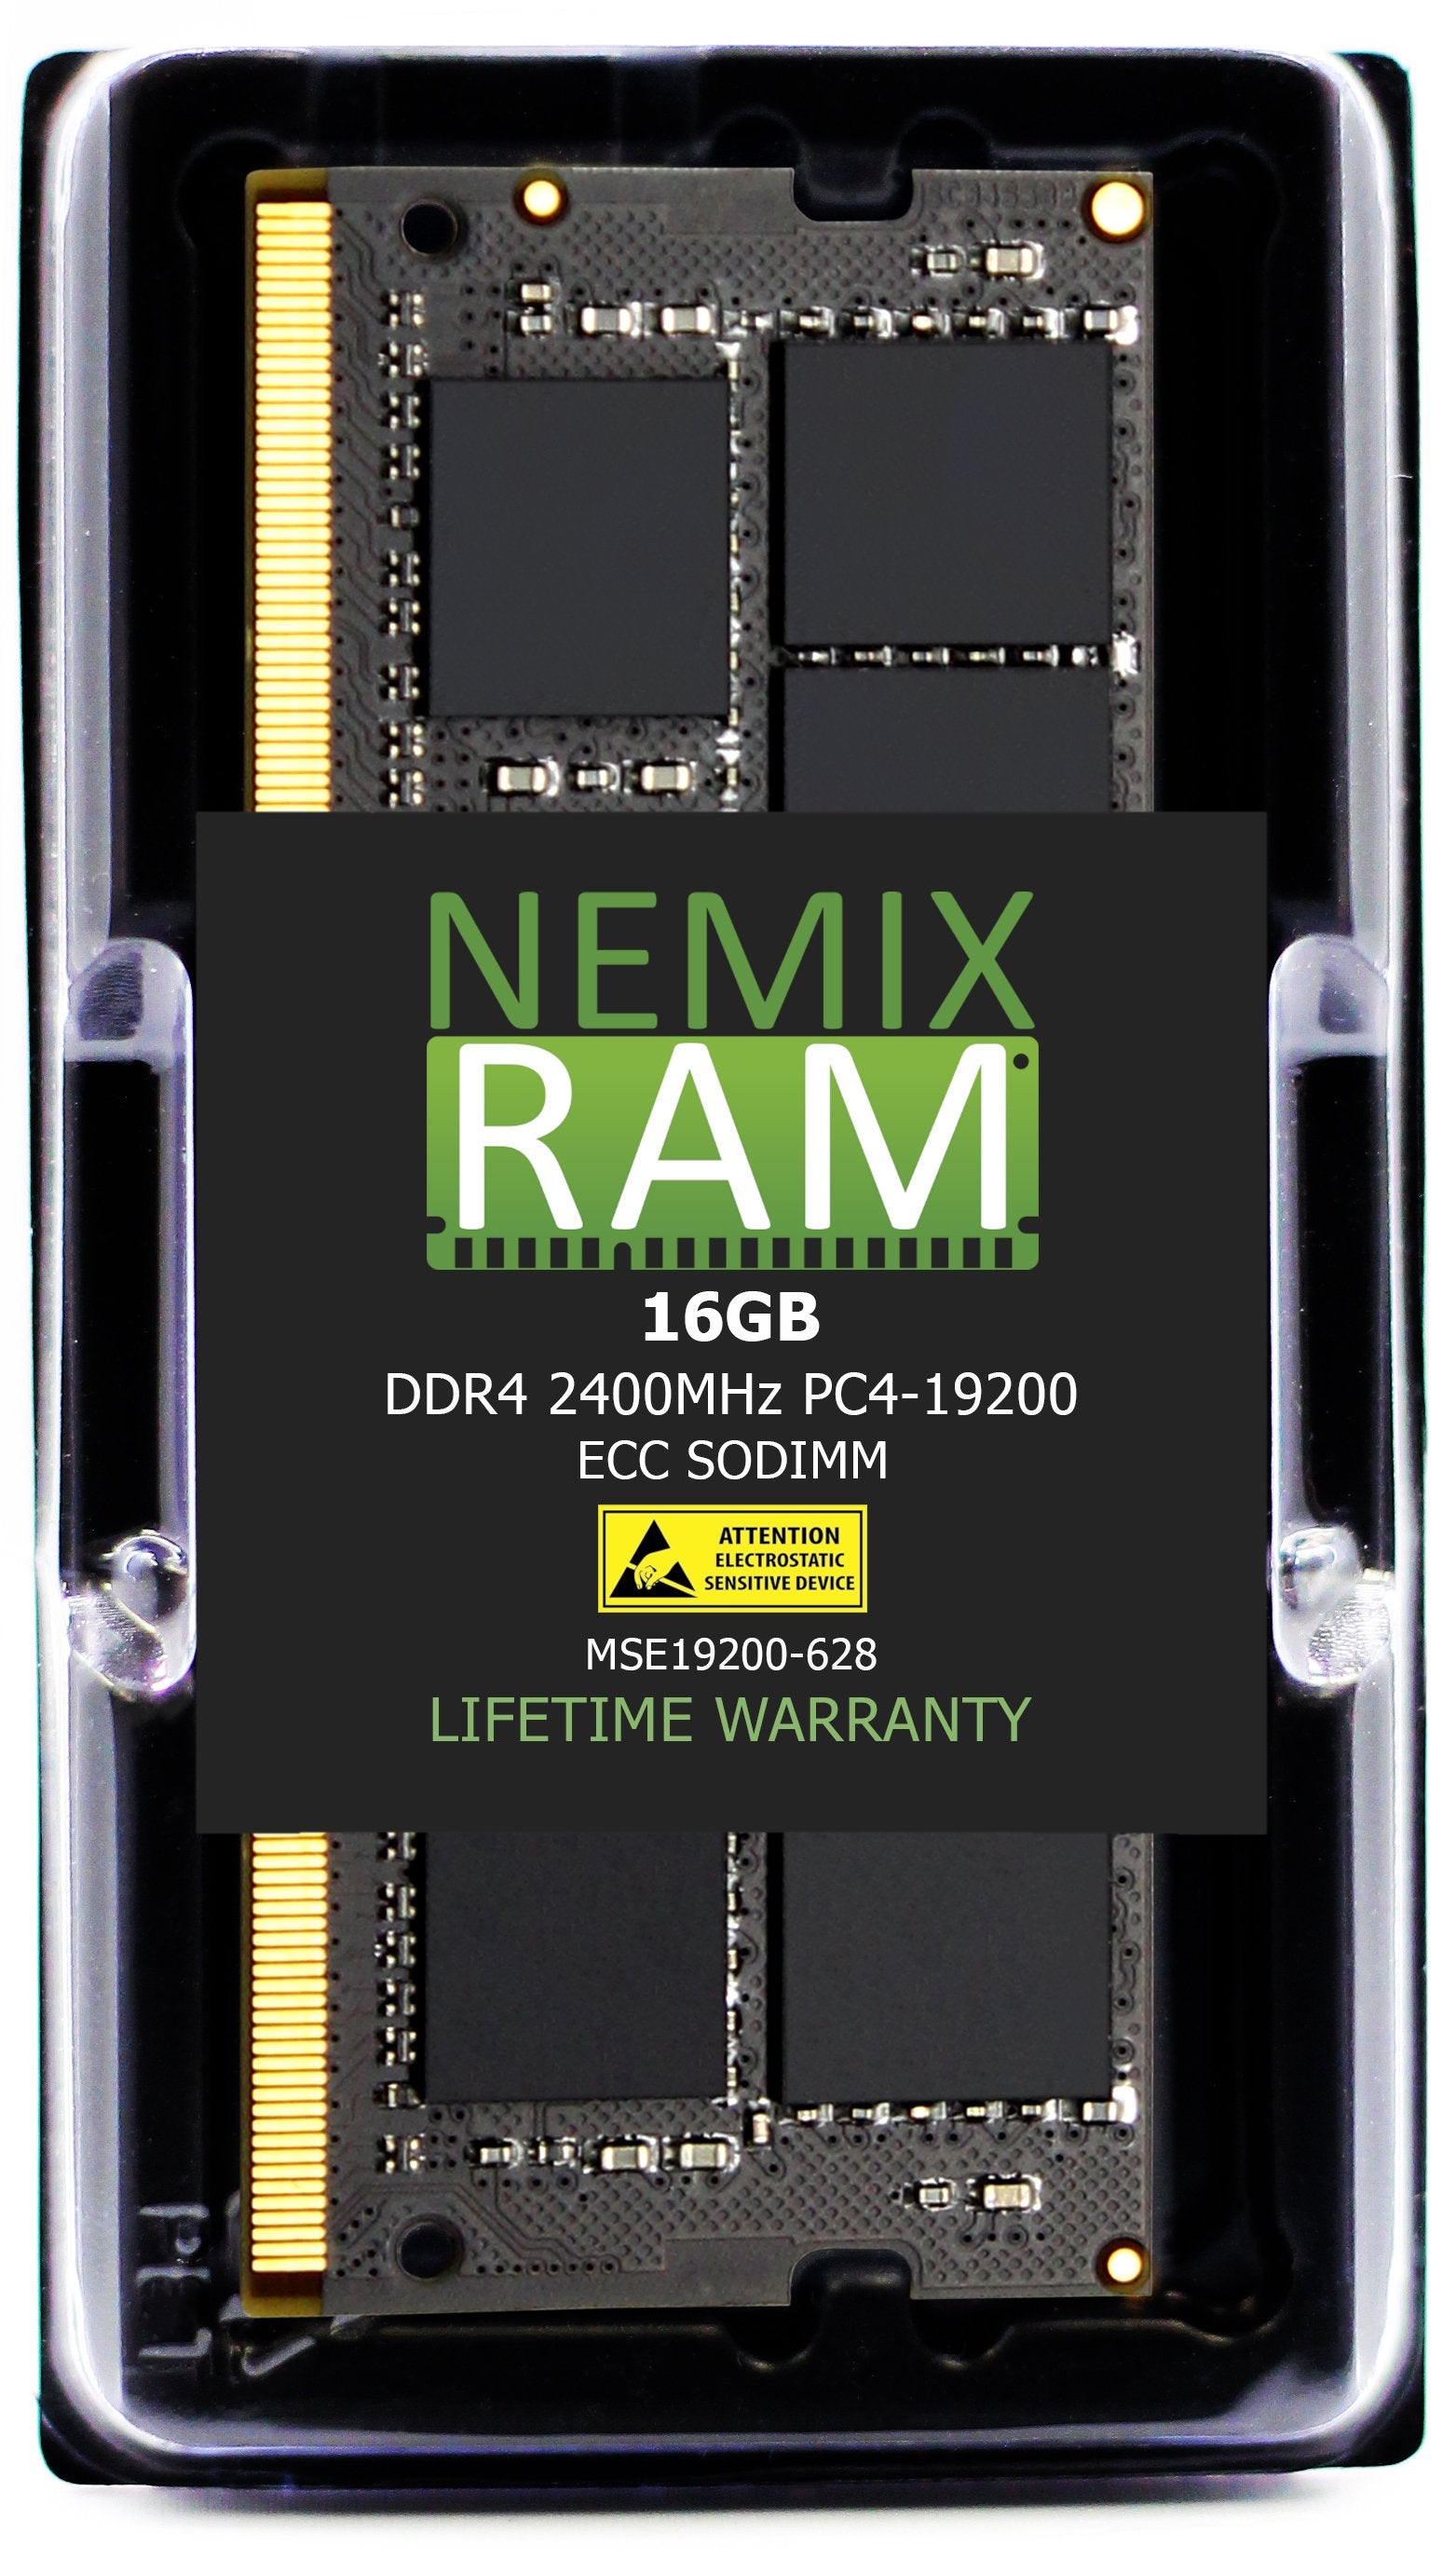 DELL SNPNVHFYC/16G A9654877 16GB DDR4 2400MHZ PC4-19200 ECC SODIMM Compatible Upgrade